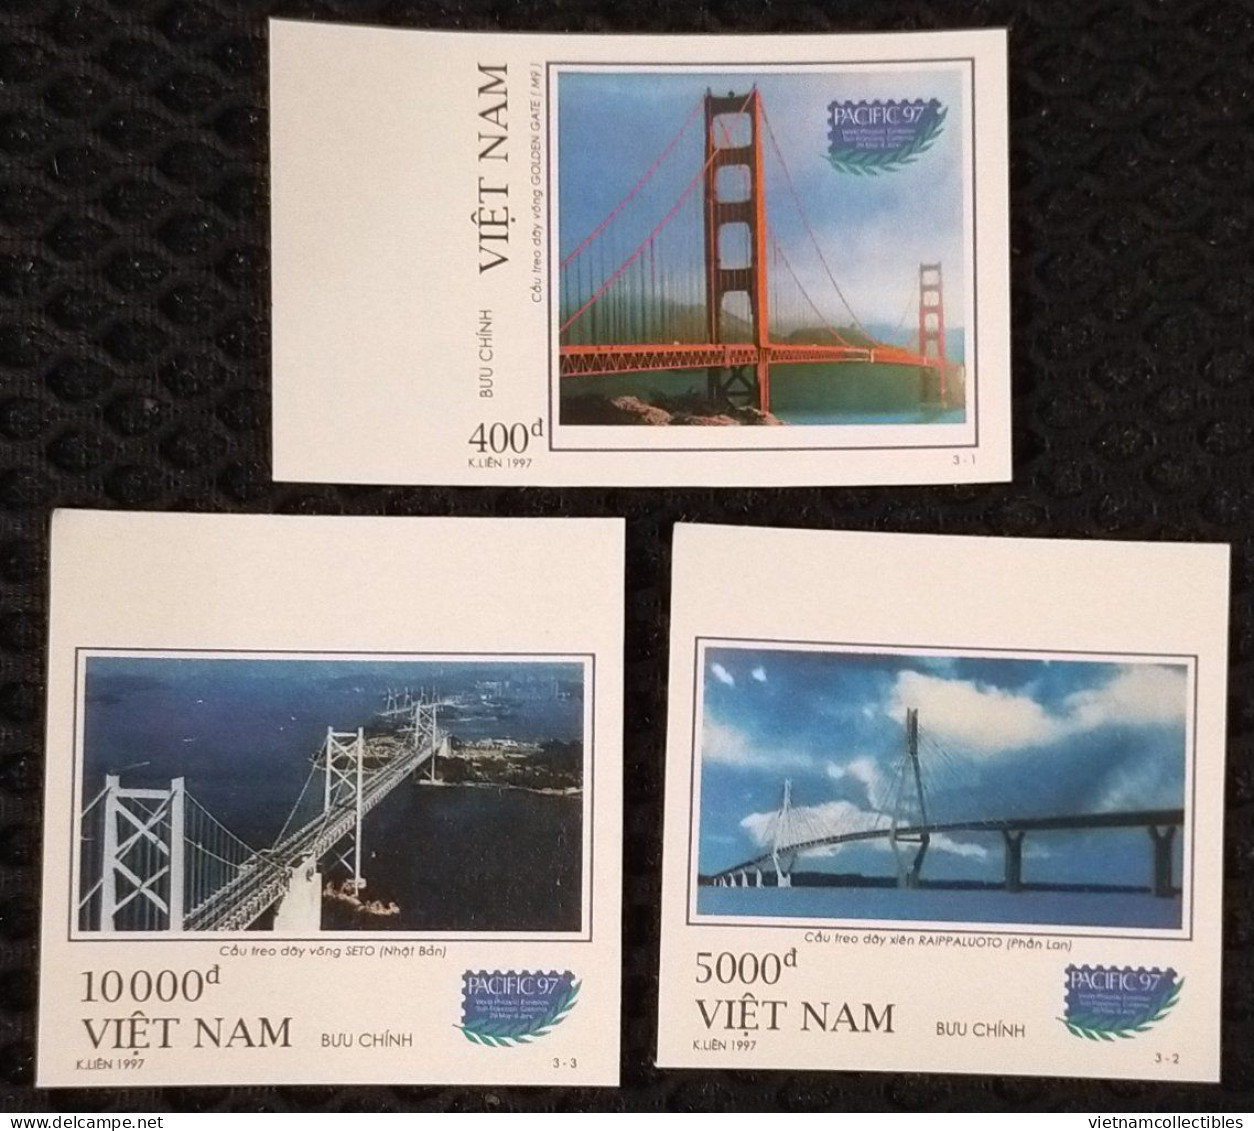 Vietnam Viet Nam MNH Imperf Stamps 1997 : World Stamp Exhibiition / Bridge / Finland / Japan / Golden Gate (Ms754) - Viêt-Nam